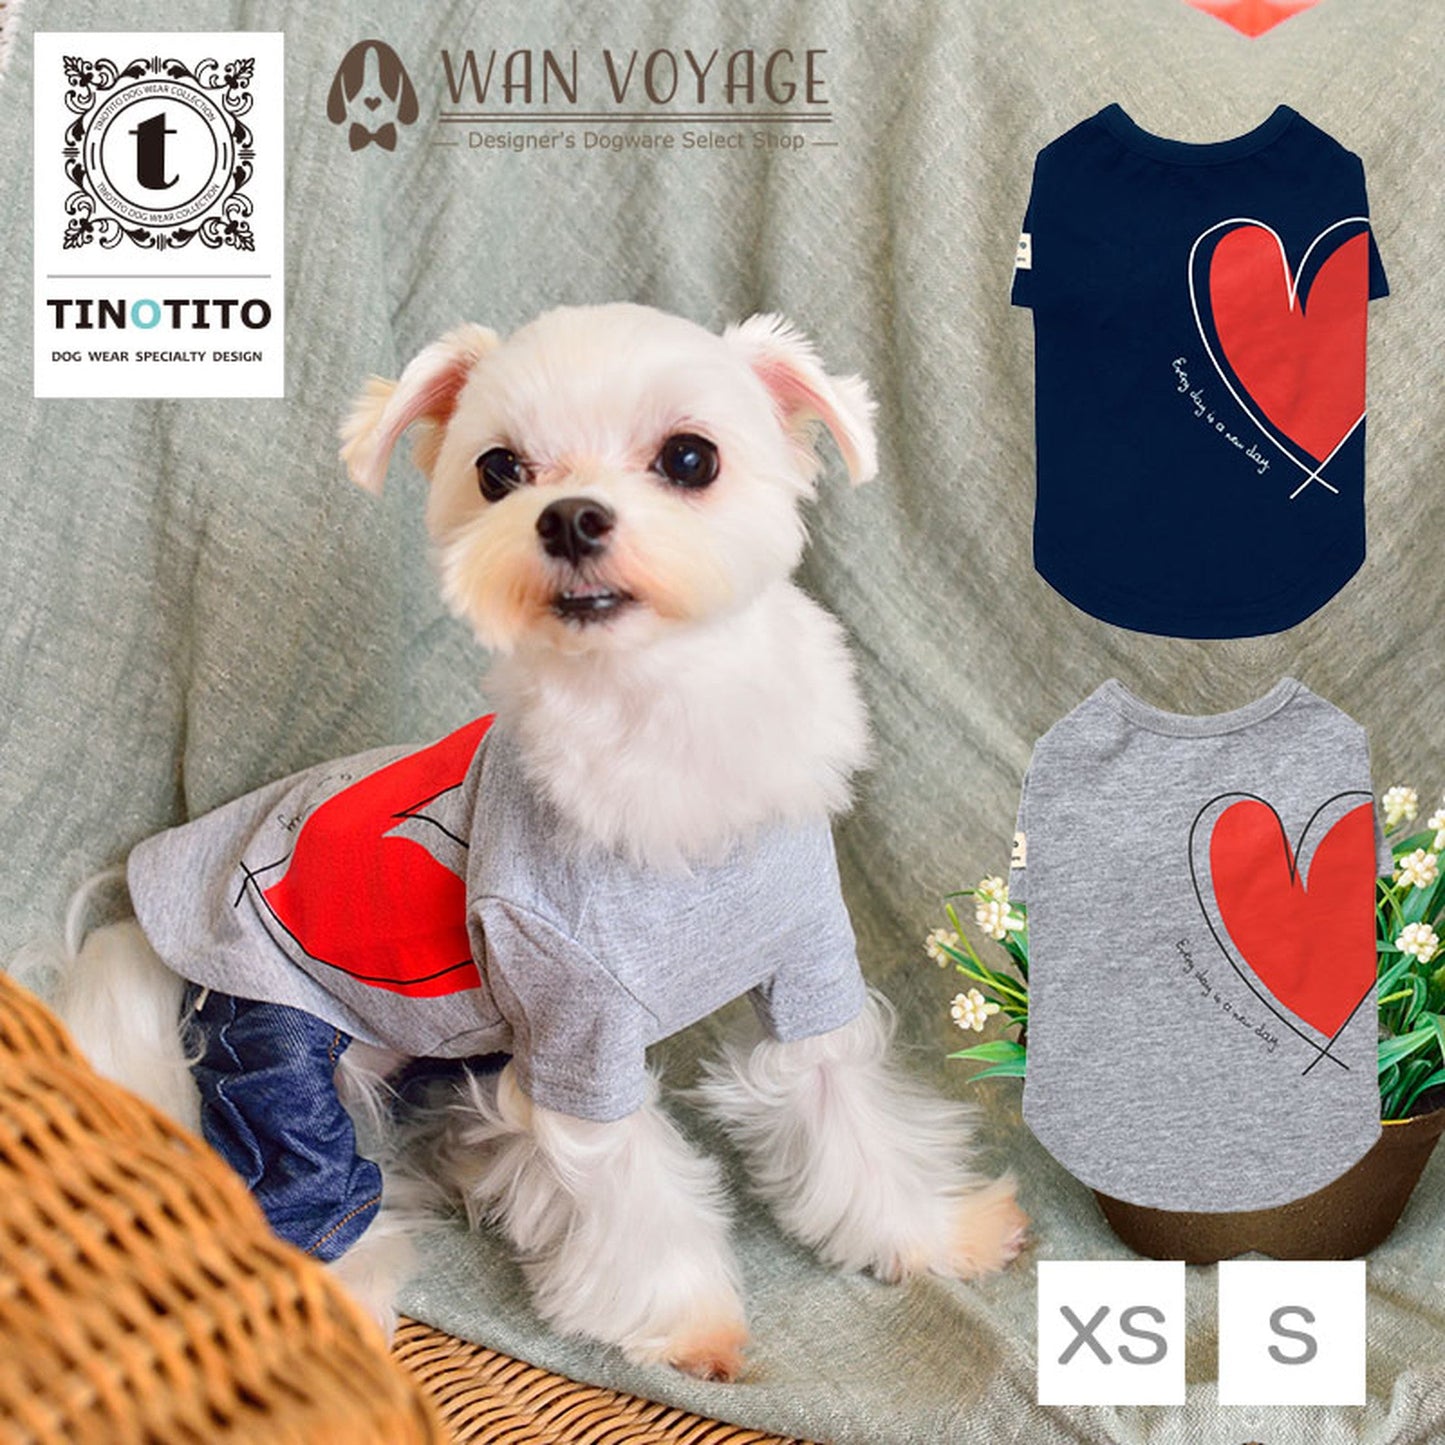 ハートプリントTシャツ 犬服 ドッグウェア XS/S ワンボヤージュ TINOTITO ティノティート トイプードル チワワ ダックス tt141169-1